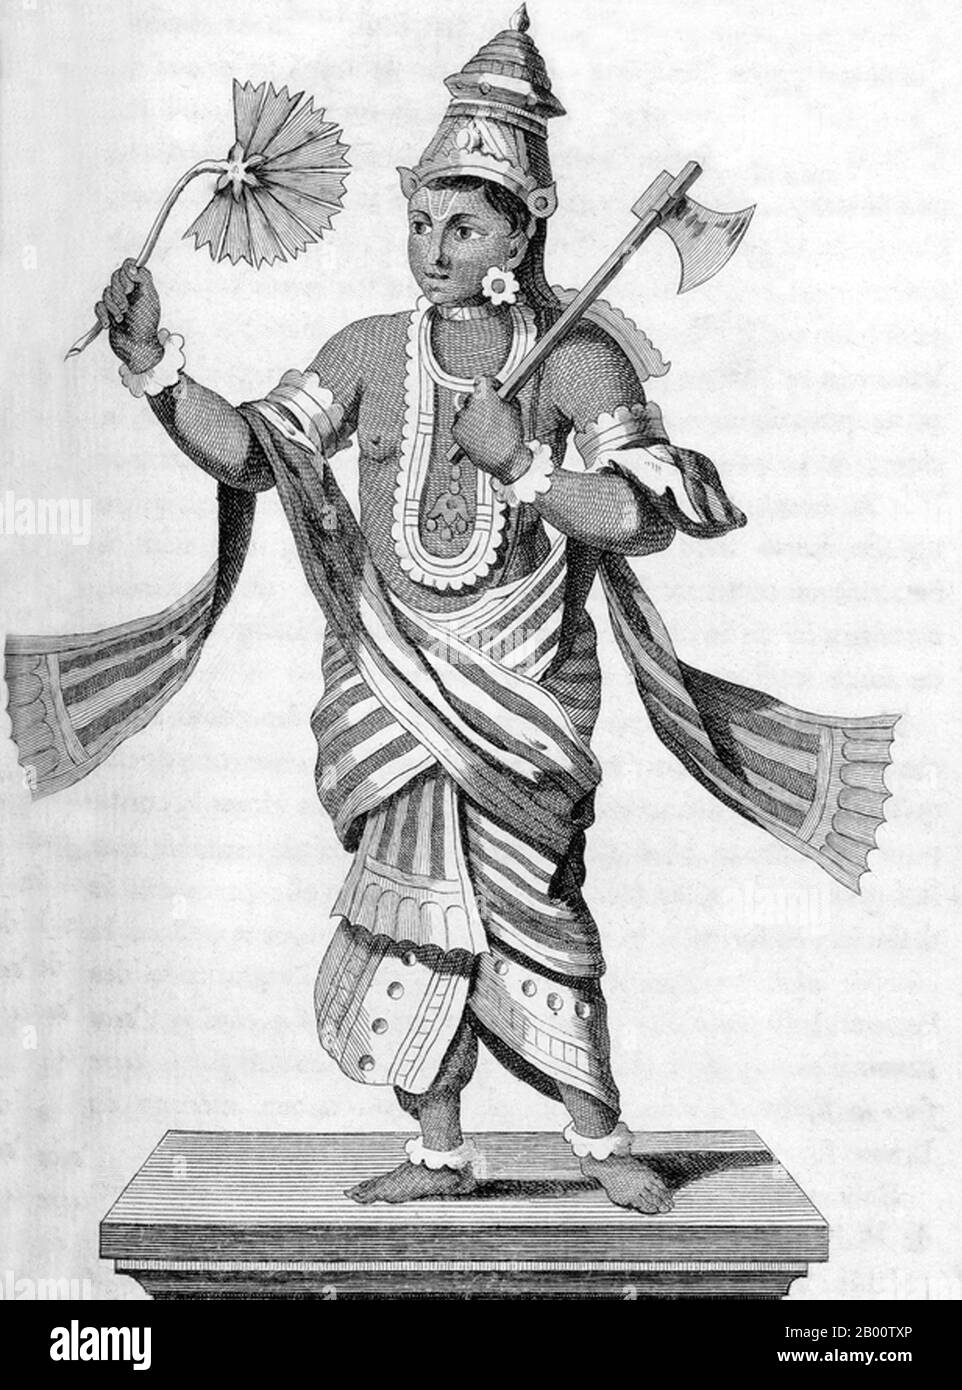 Parashurama – The 6th Avatar of Lord Vishnu